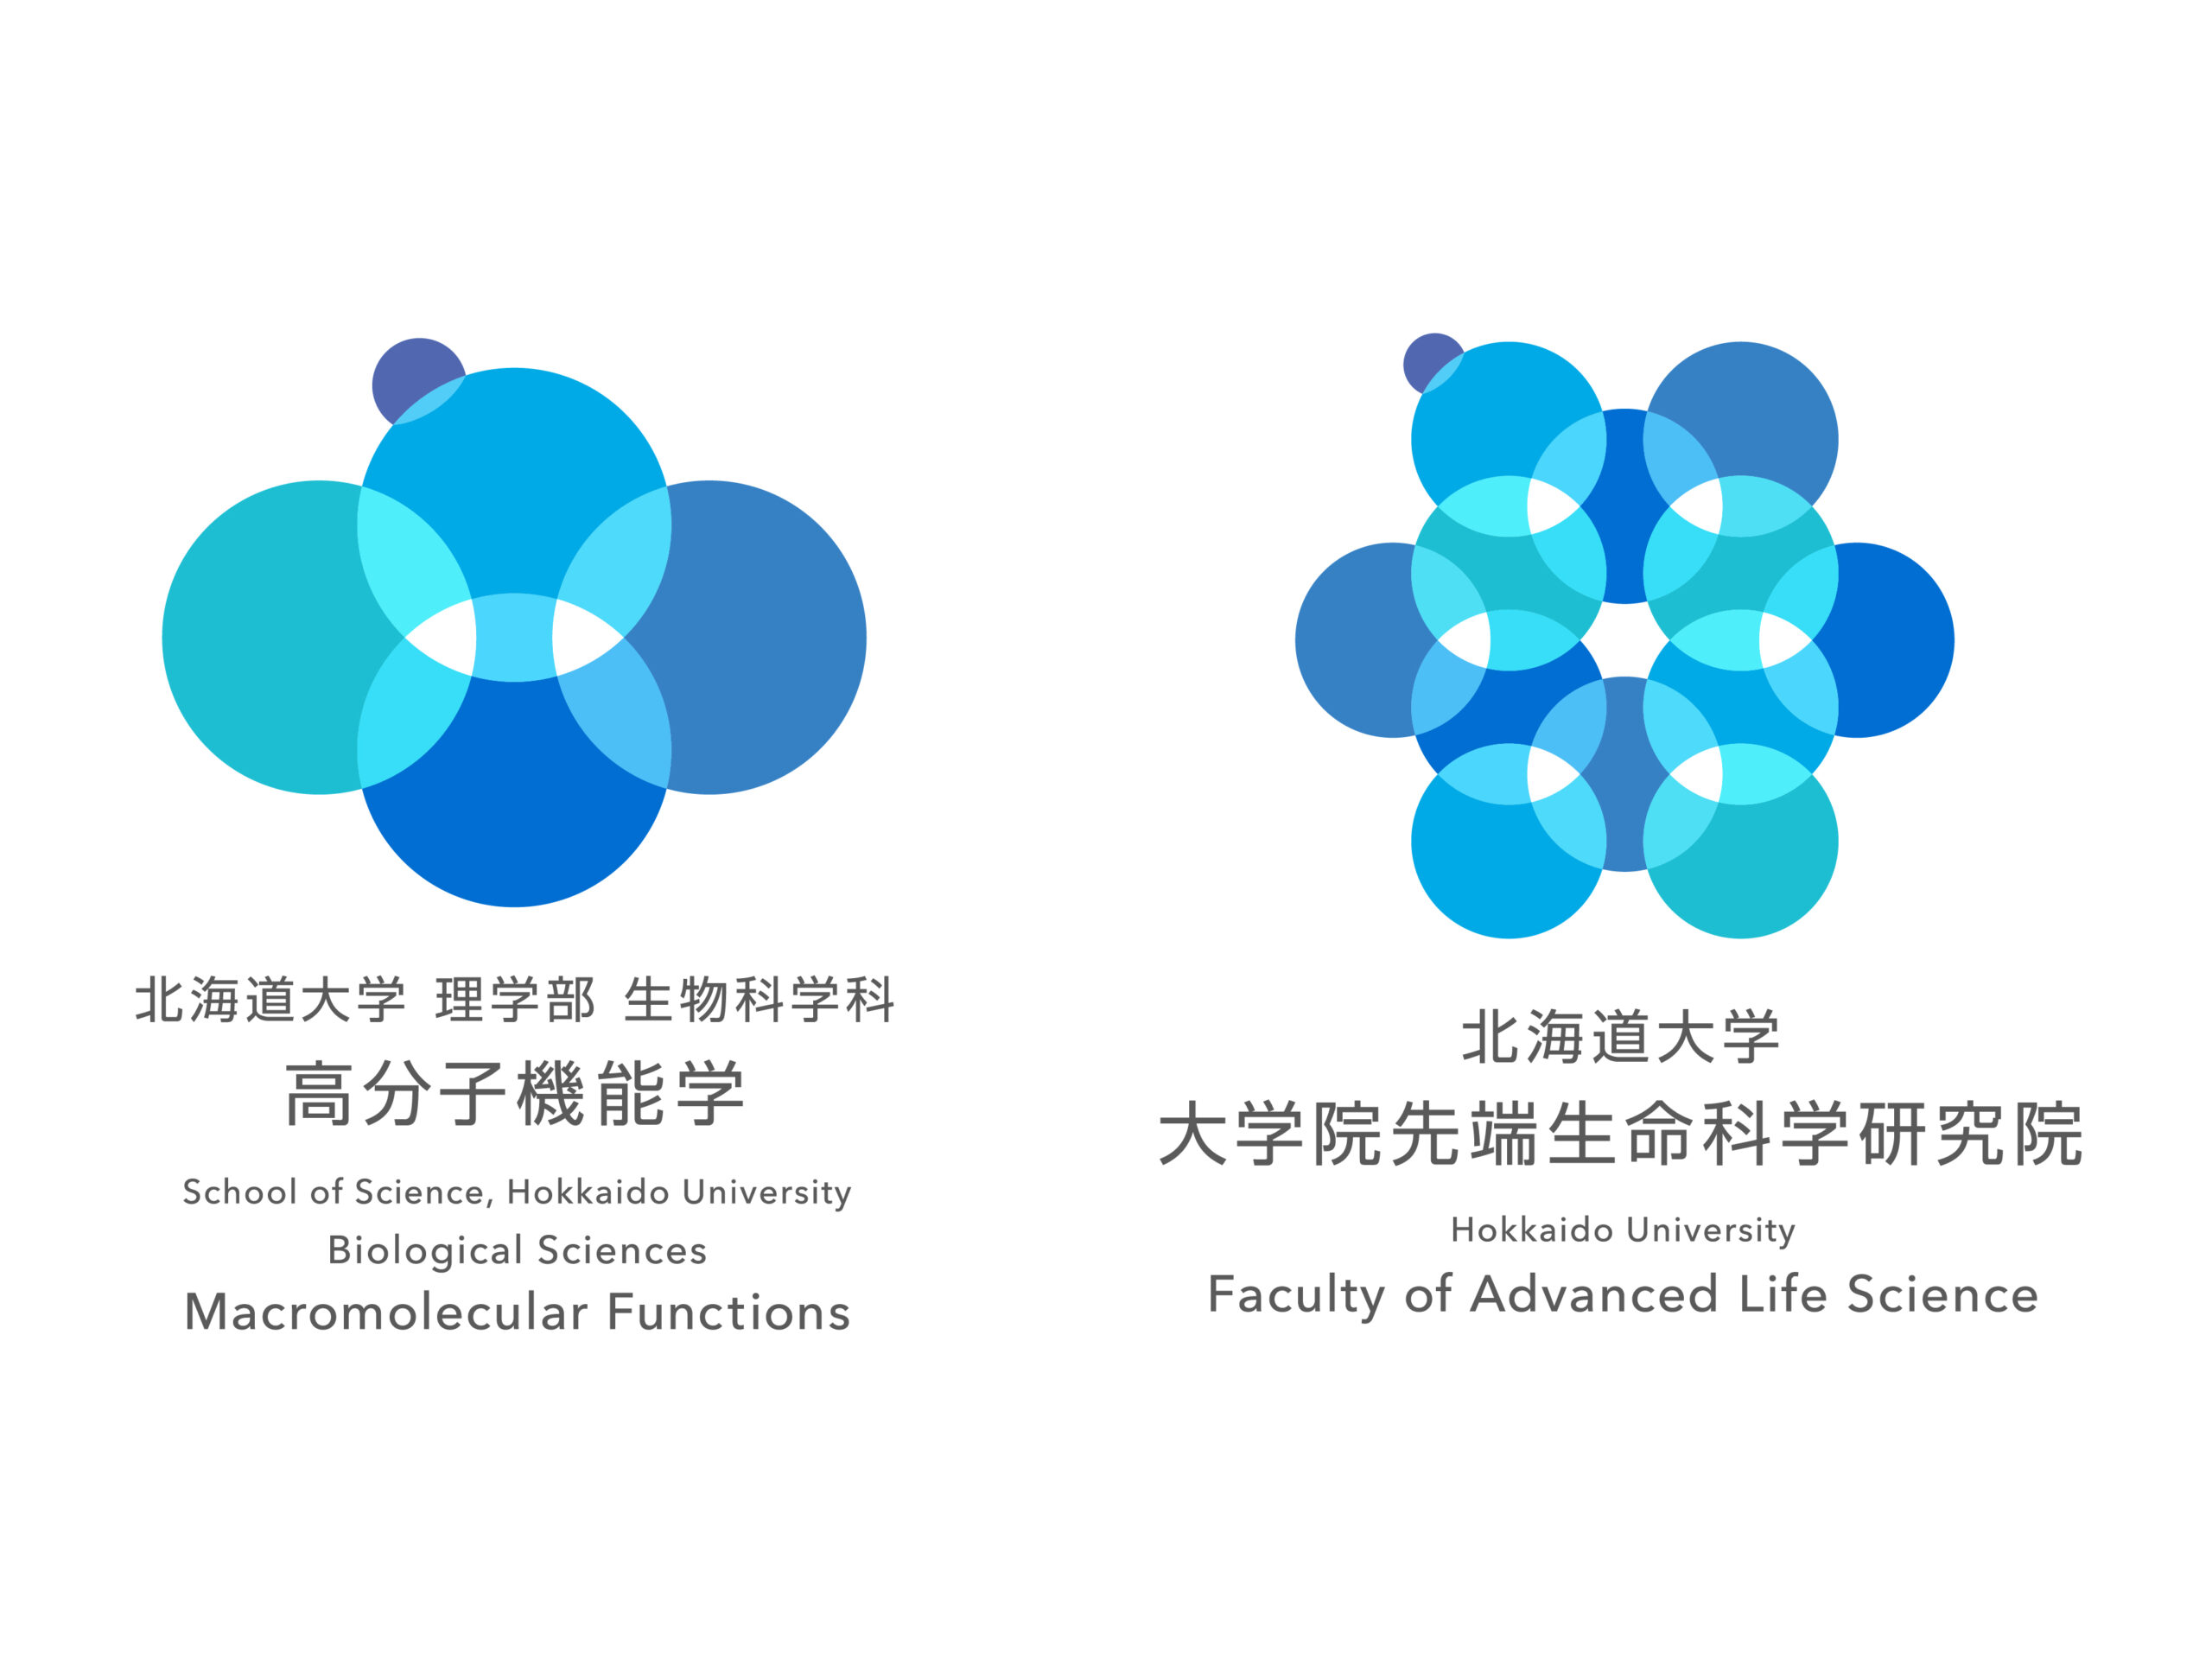 生物科学科 高分子機能学 と先端生命科学研究院のロゴができました 北海道大学 大学院先端生命科学研究院附属施設 次世代物質生命科学研究センター